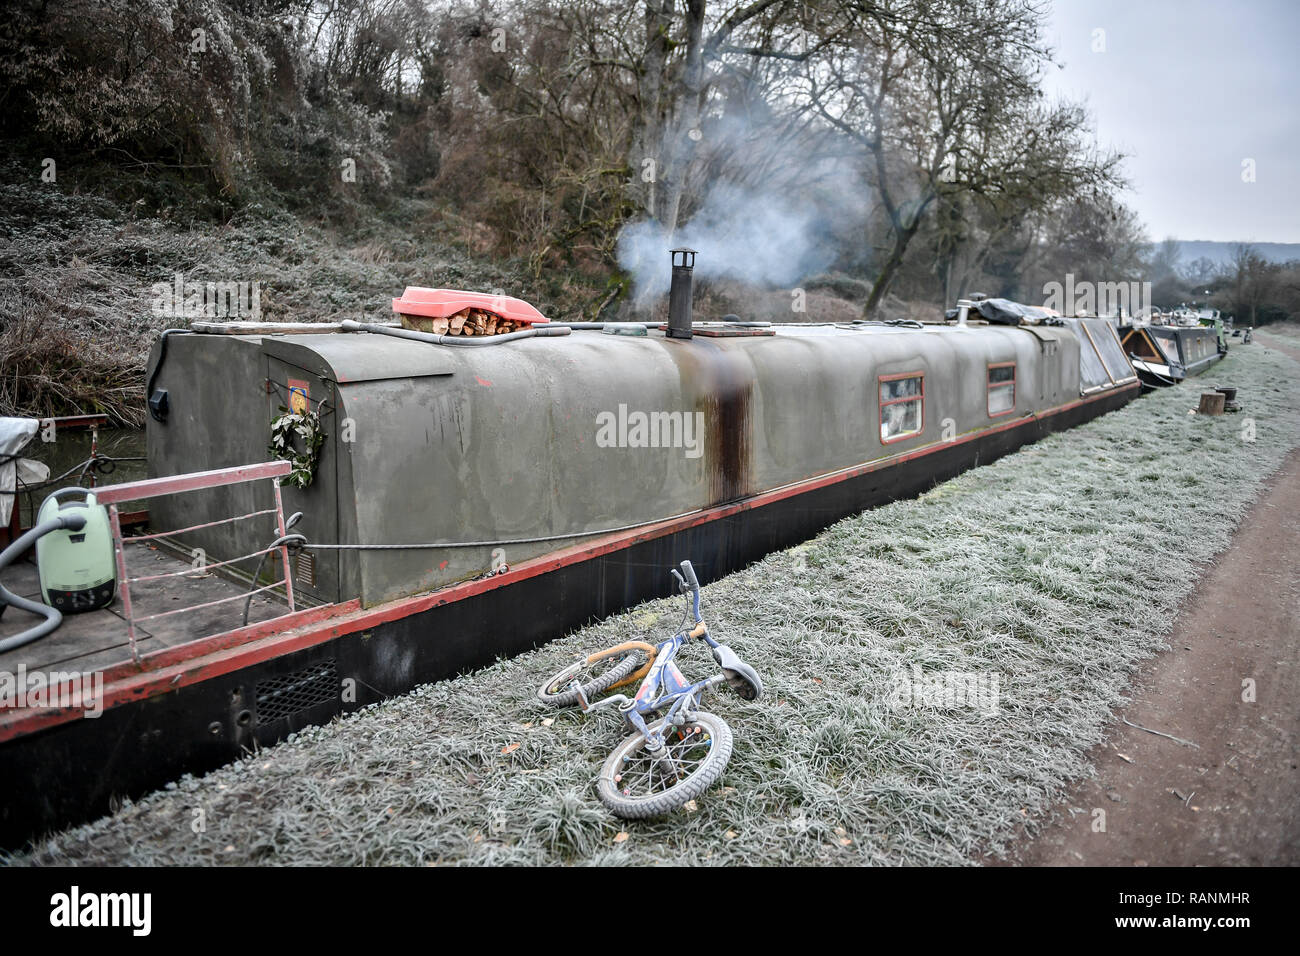 Un vélo d'enfant est givrée à côté d'un grand classique sur le canal Kennet et Avon, baignoire, comme la température dans certaines régions de Grande-Bretagne a chuté en dessous de zéro la nuit. Banque D'Images